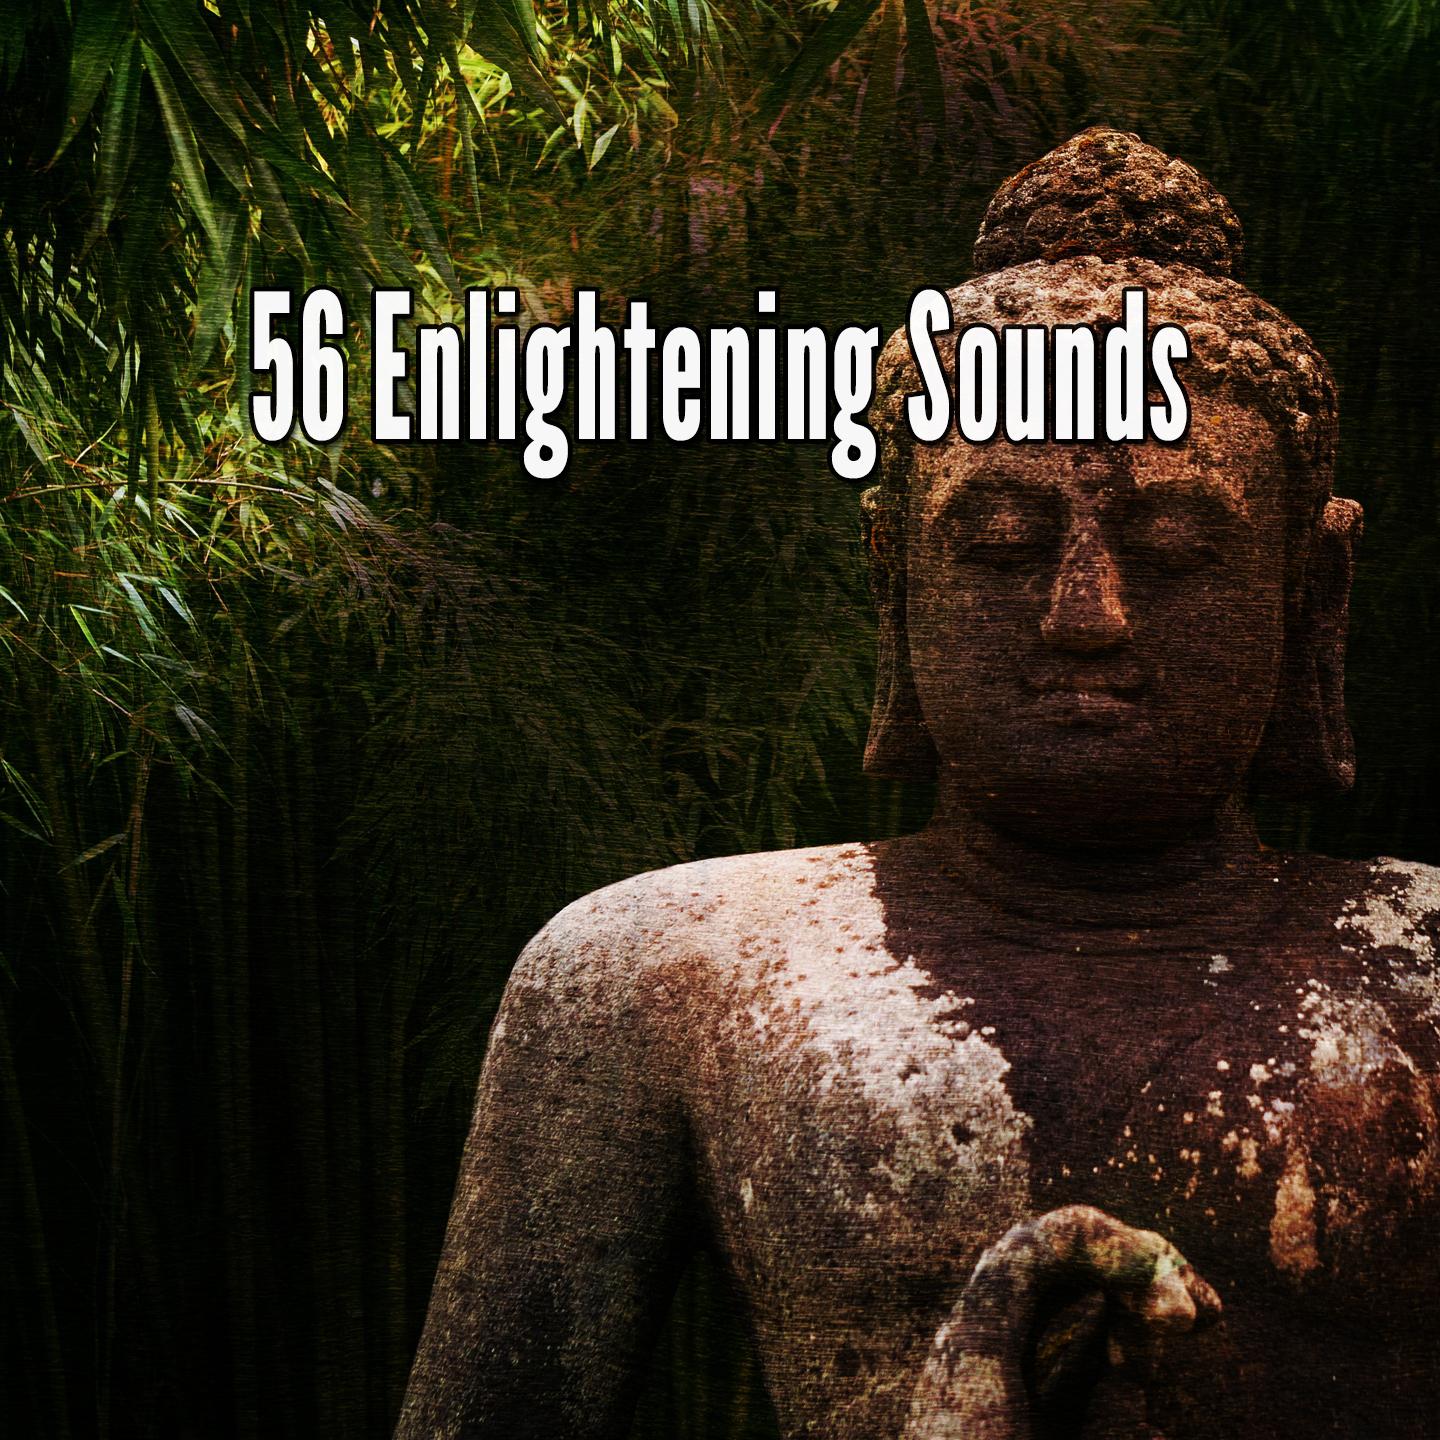 56 Enlightening Sounds